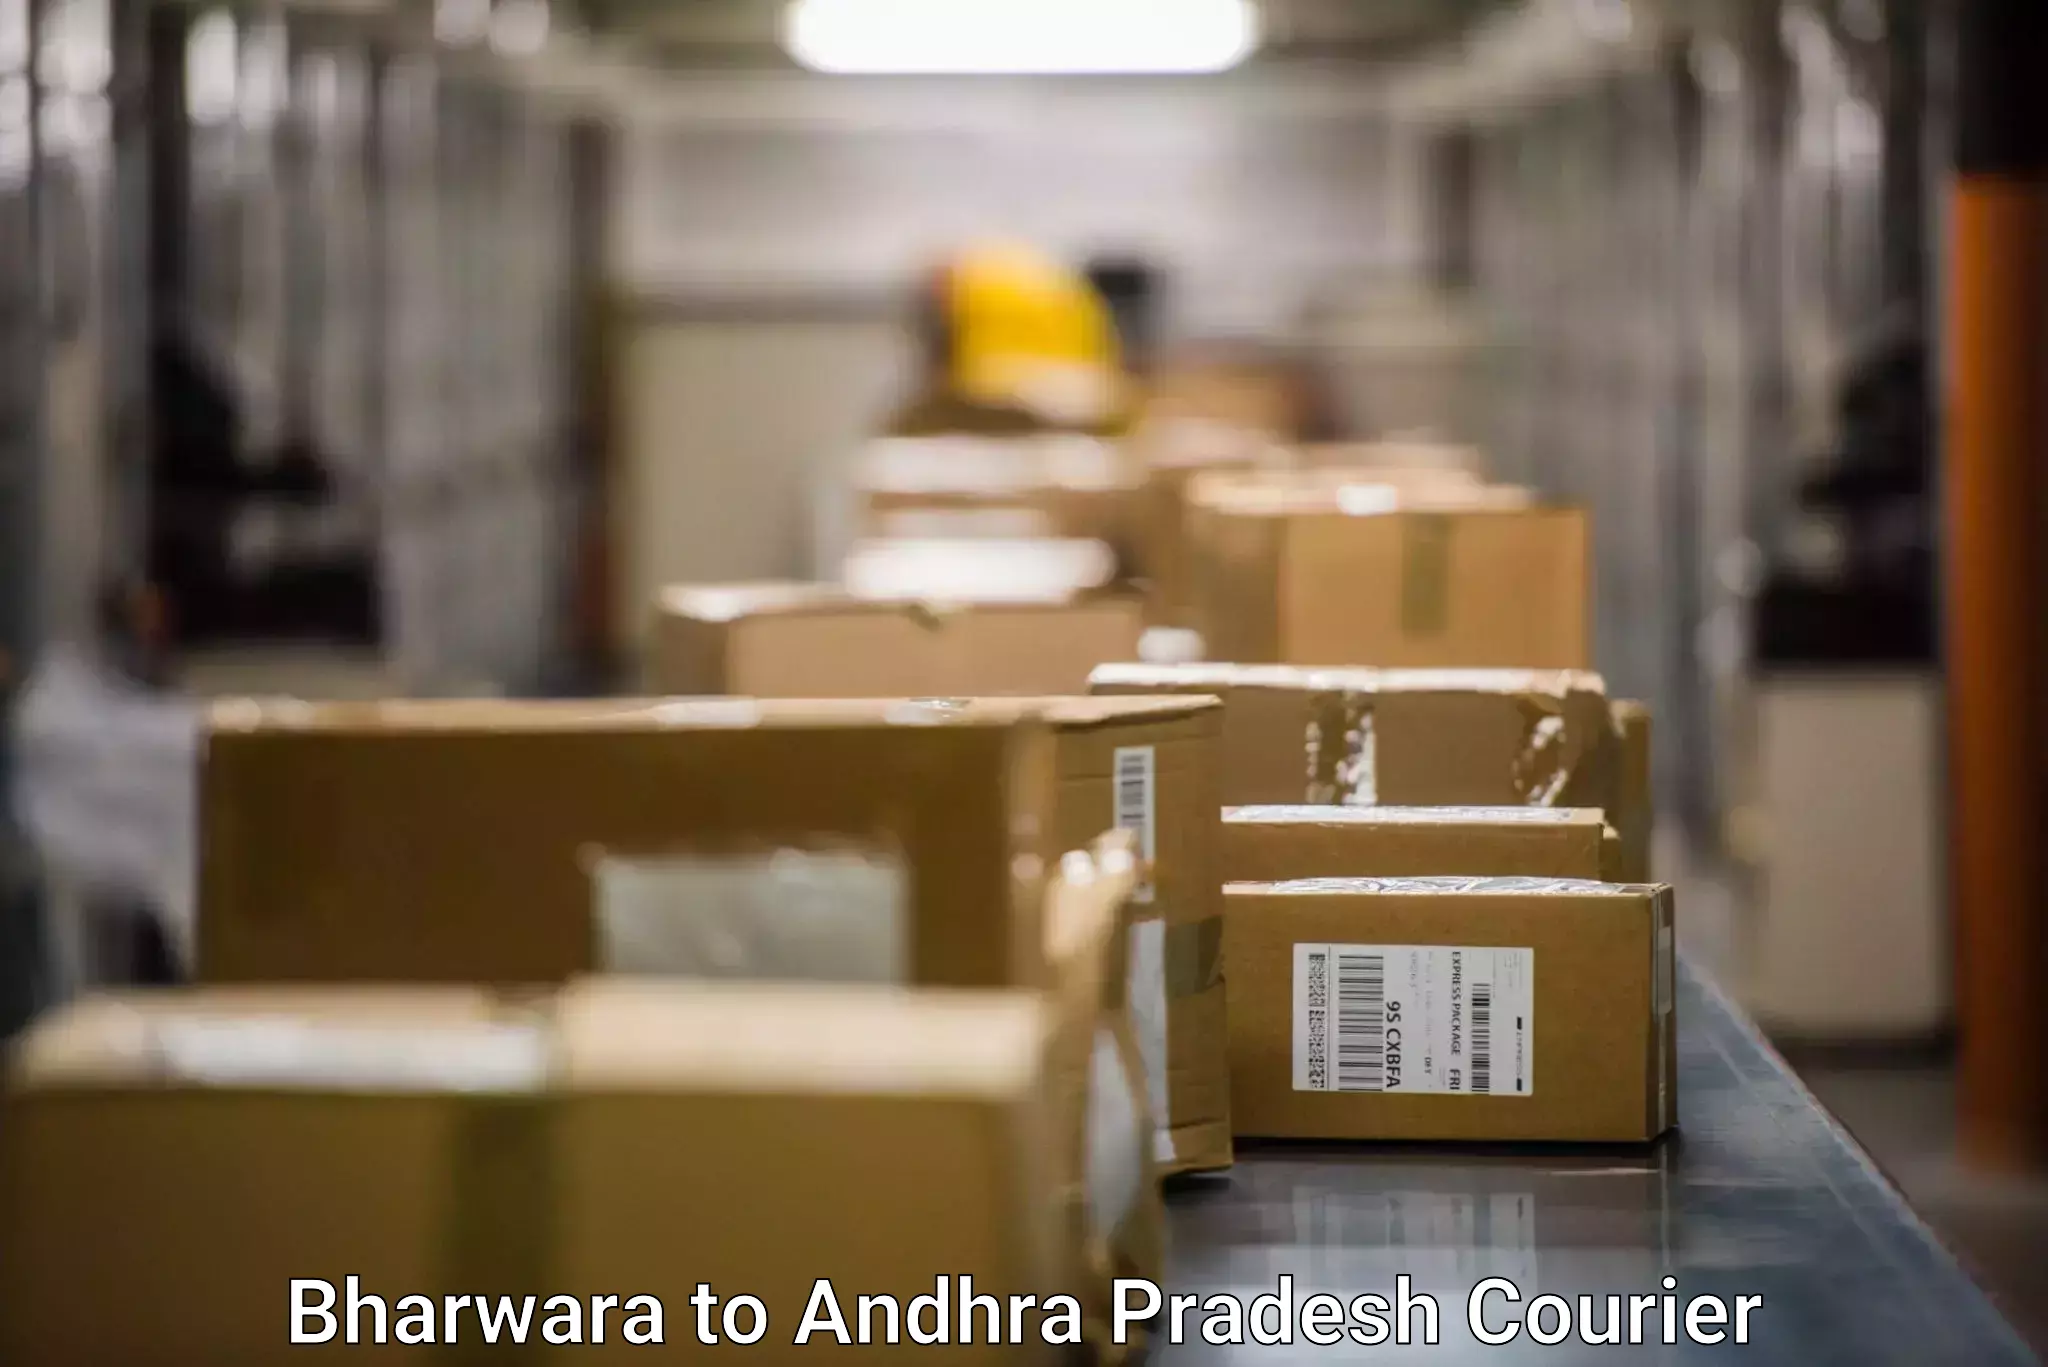 Large package courier Bharwara to Ramachandrapuram